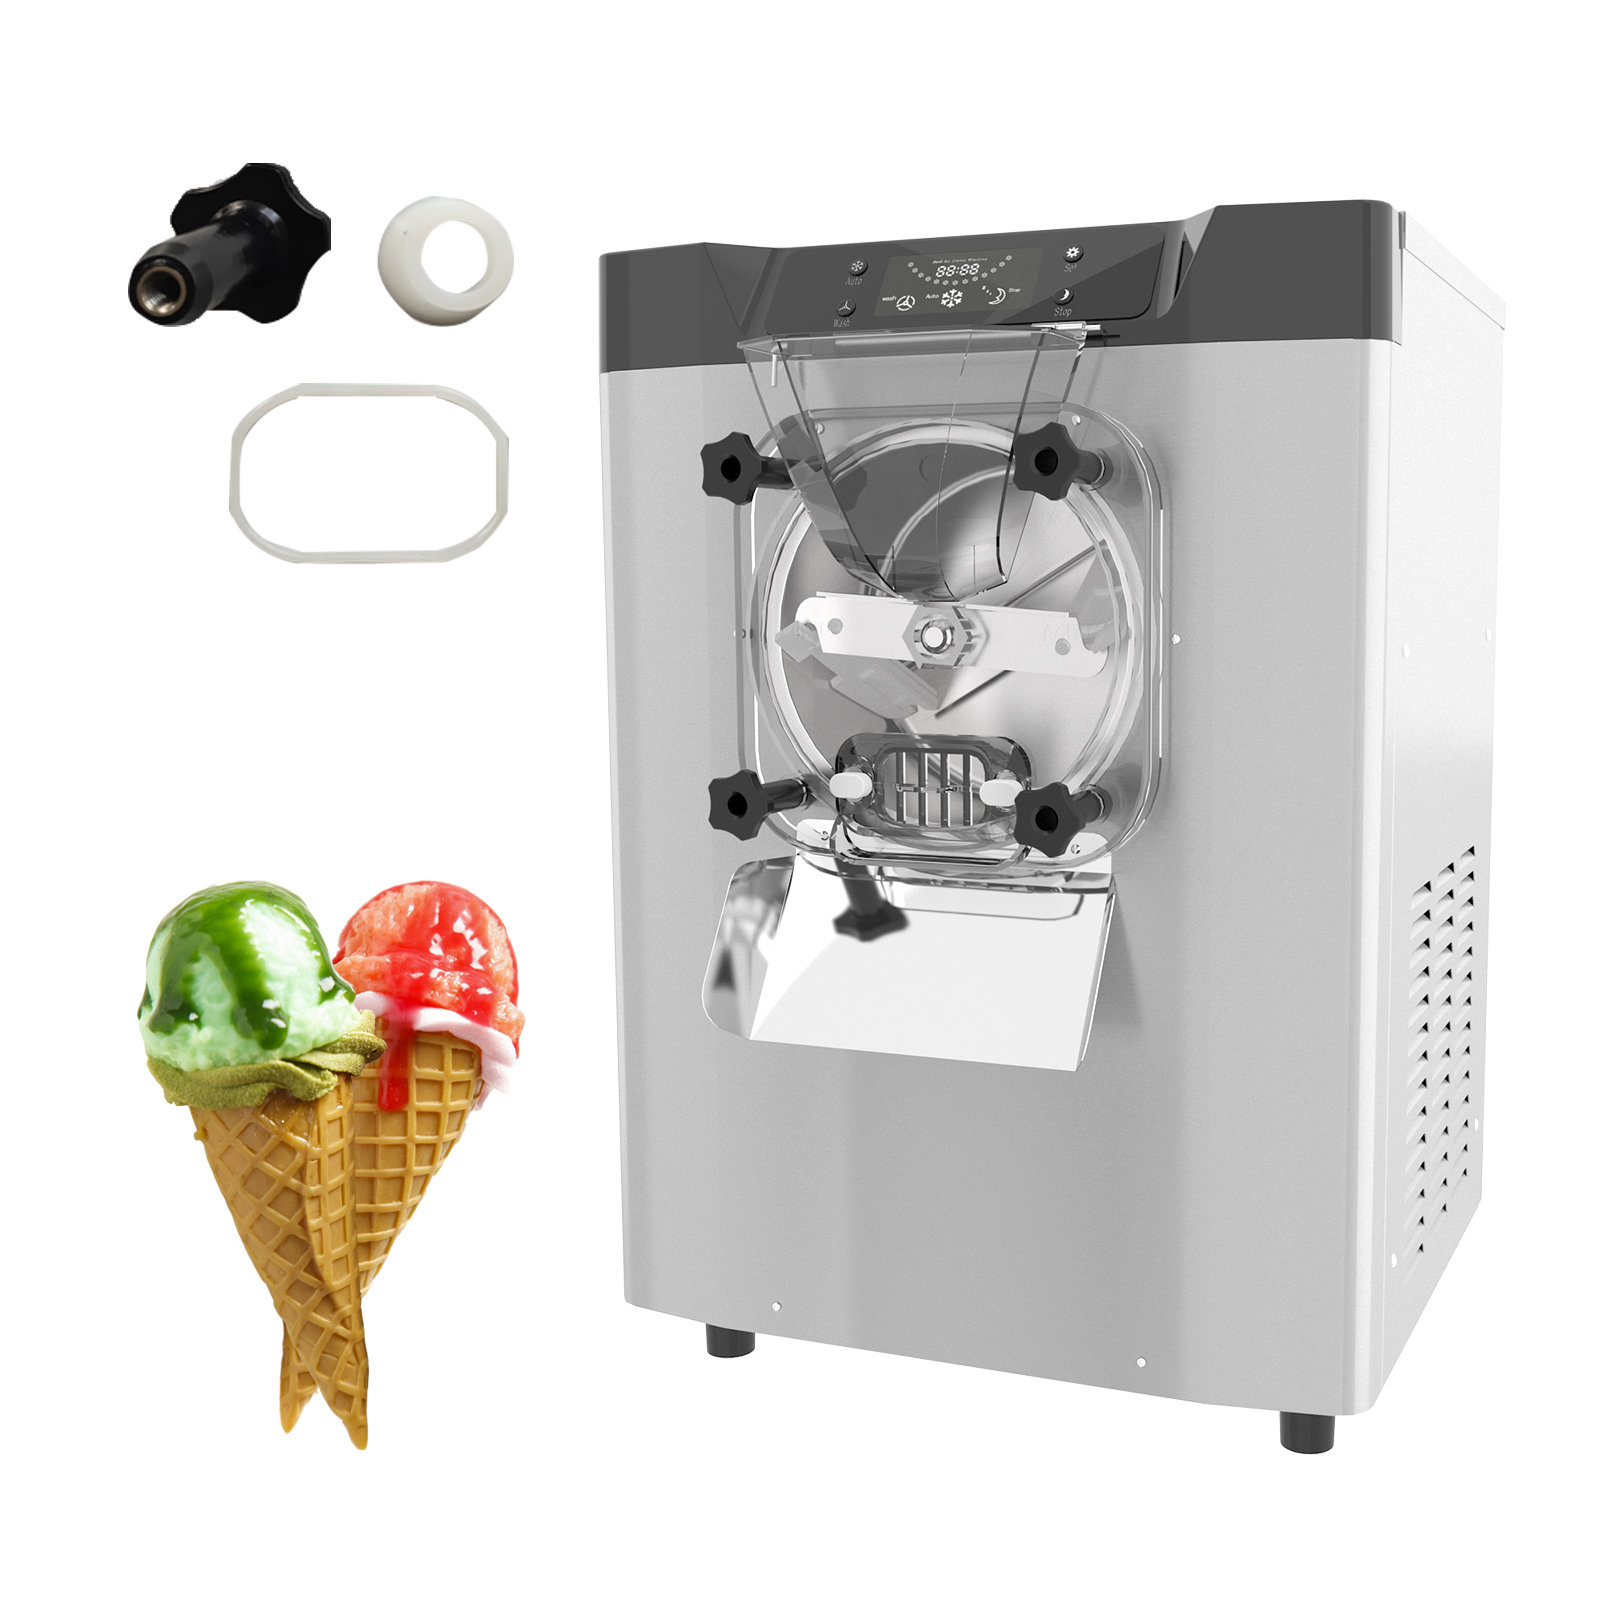 Soft Serve Ice Cream Machine Home